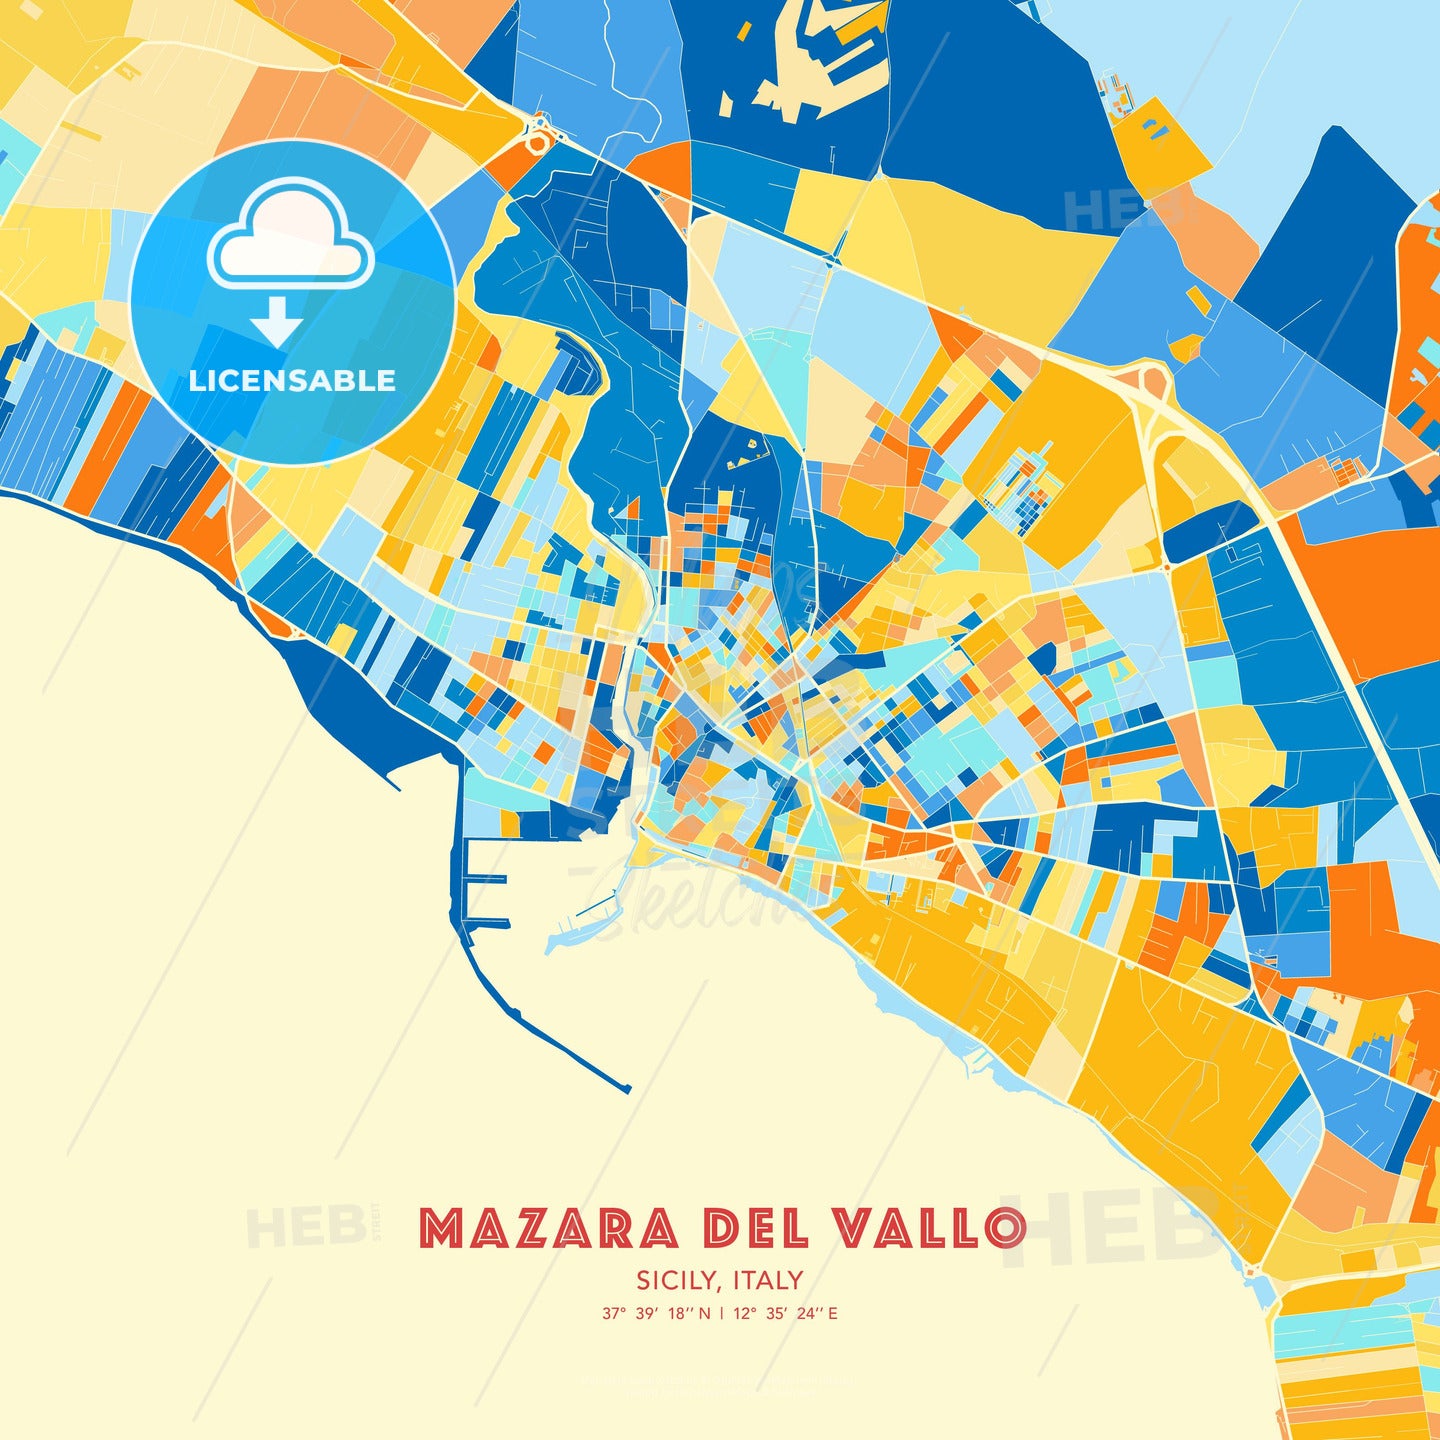 Mazara del Vallo, Sicily, Italy, map - HEBSTREITS Sketches